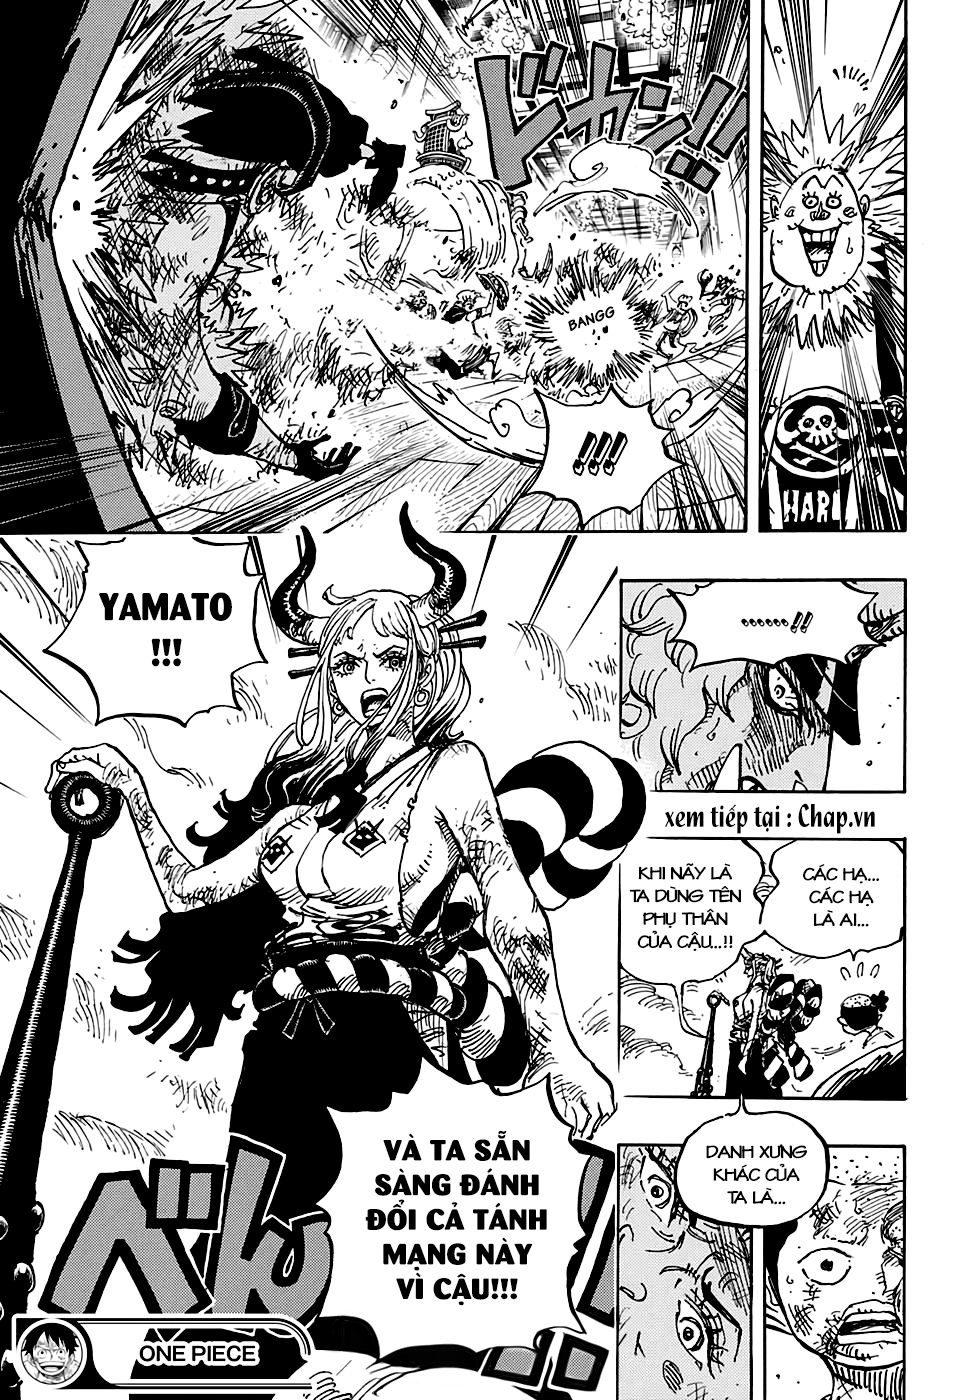 One Piece Chapter 994 - "Danh Xưng Khác Của Ta Là Yamato" | Diễn Đàn